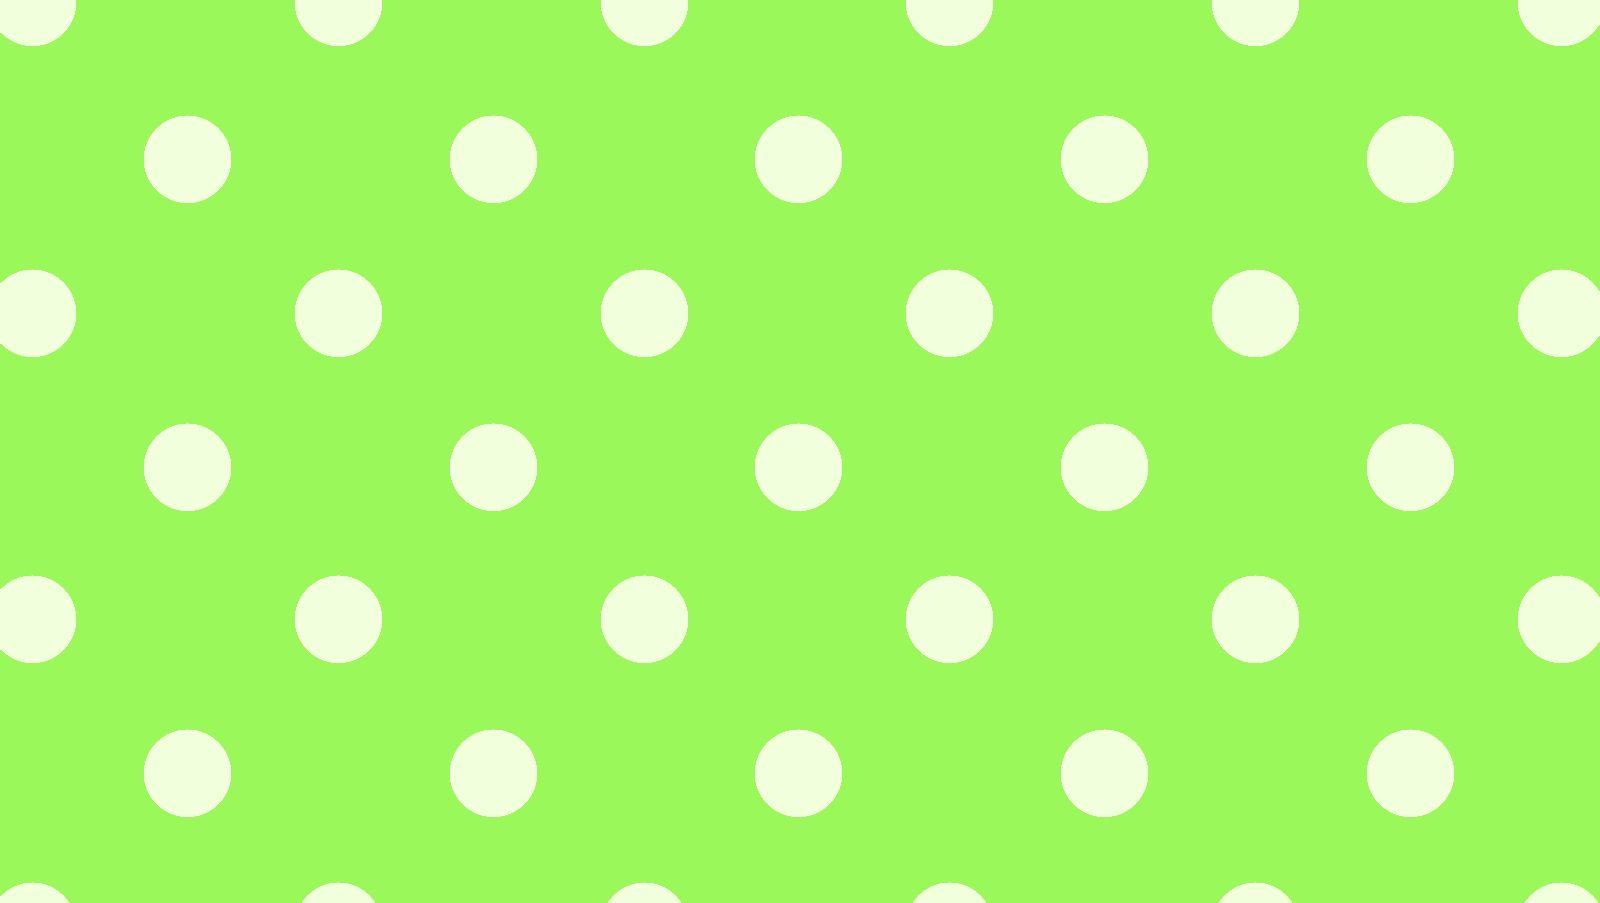 Polka Dot Wallpaper 3031 1600x903 px